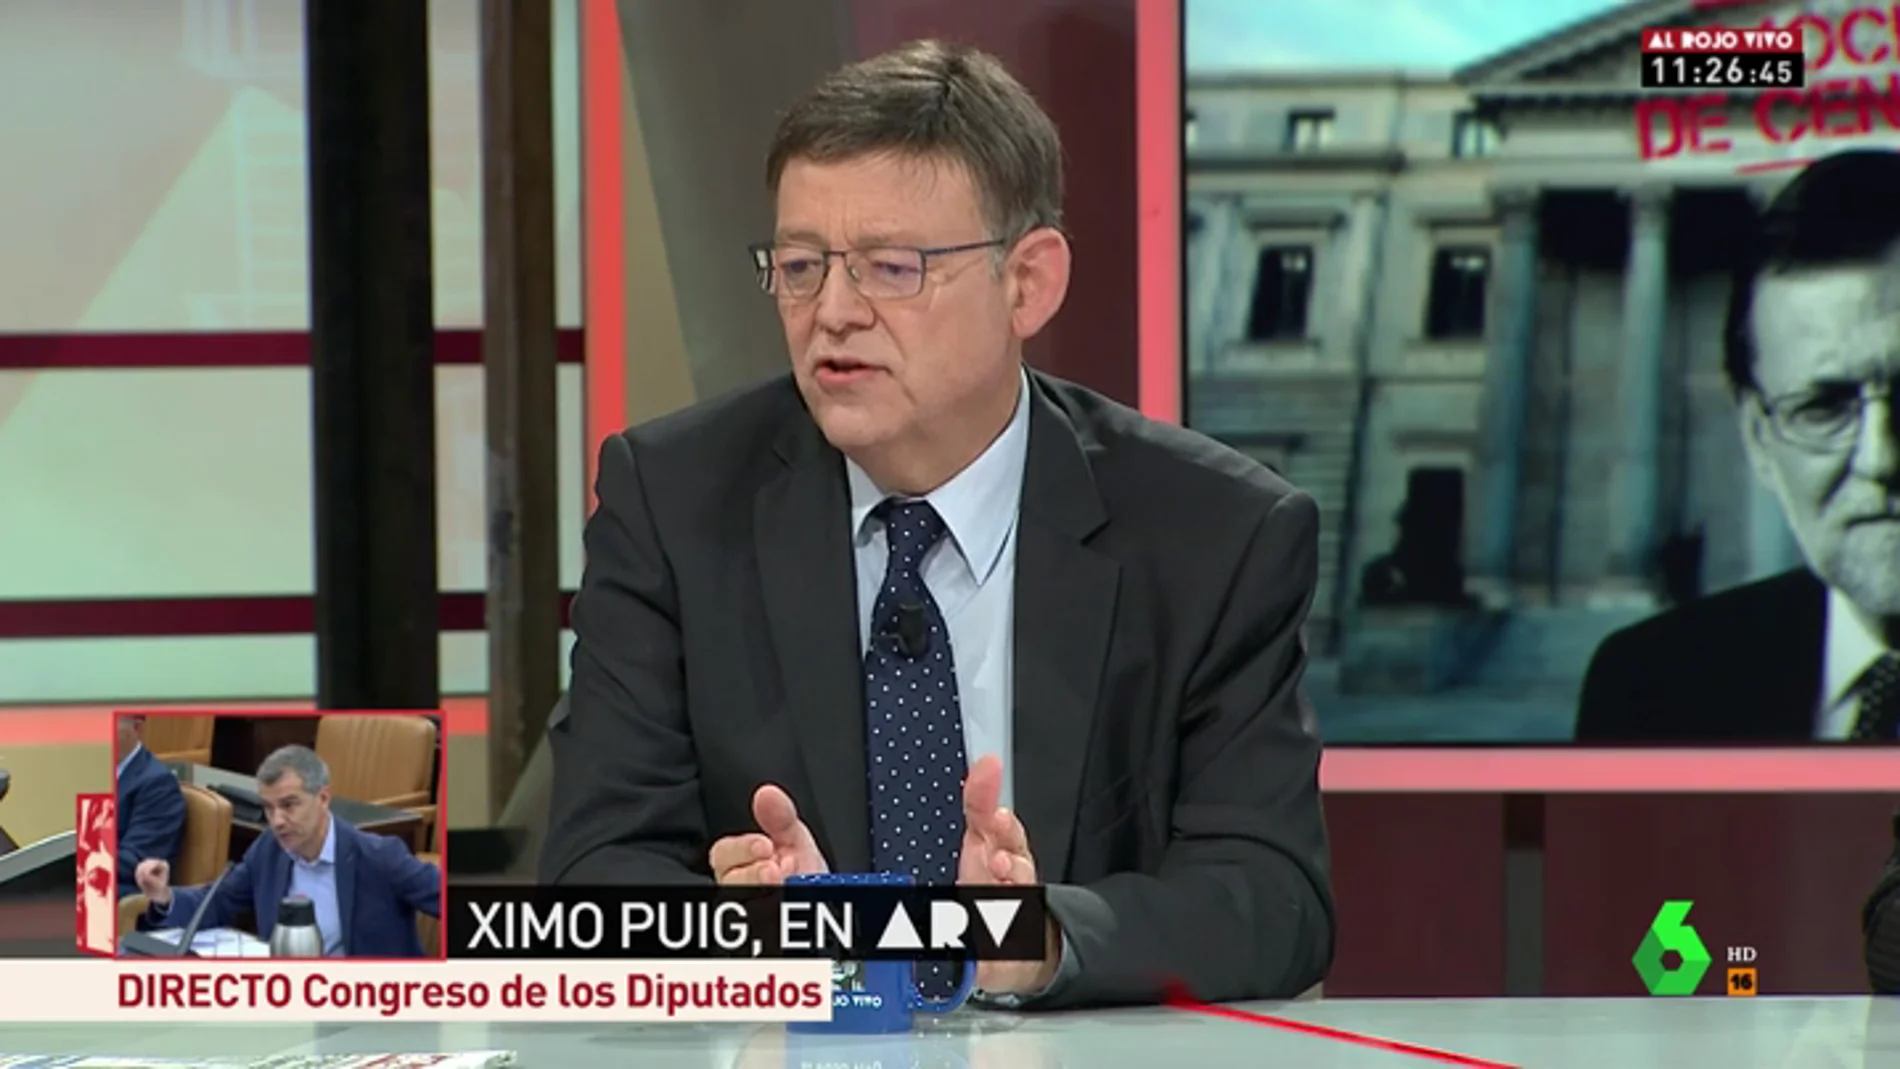 Ximo Puig asegura que "todo el PSOE" apoya la moción de censura y que no habrá "ningún acuerdo fuera del marco constitucional"